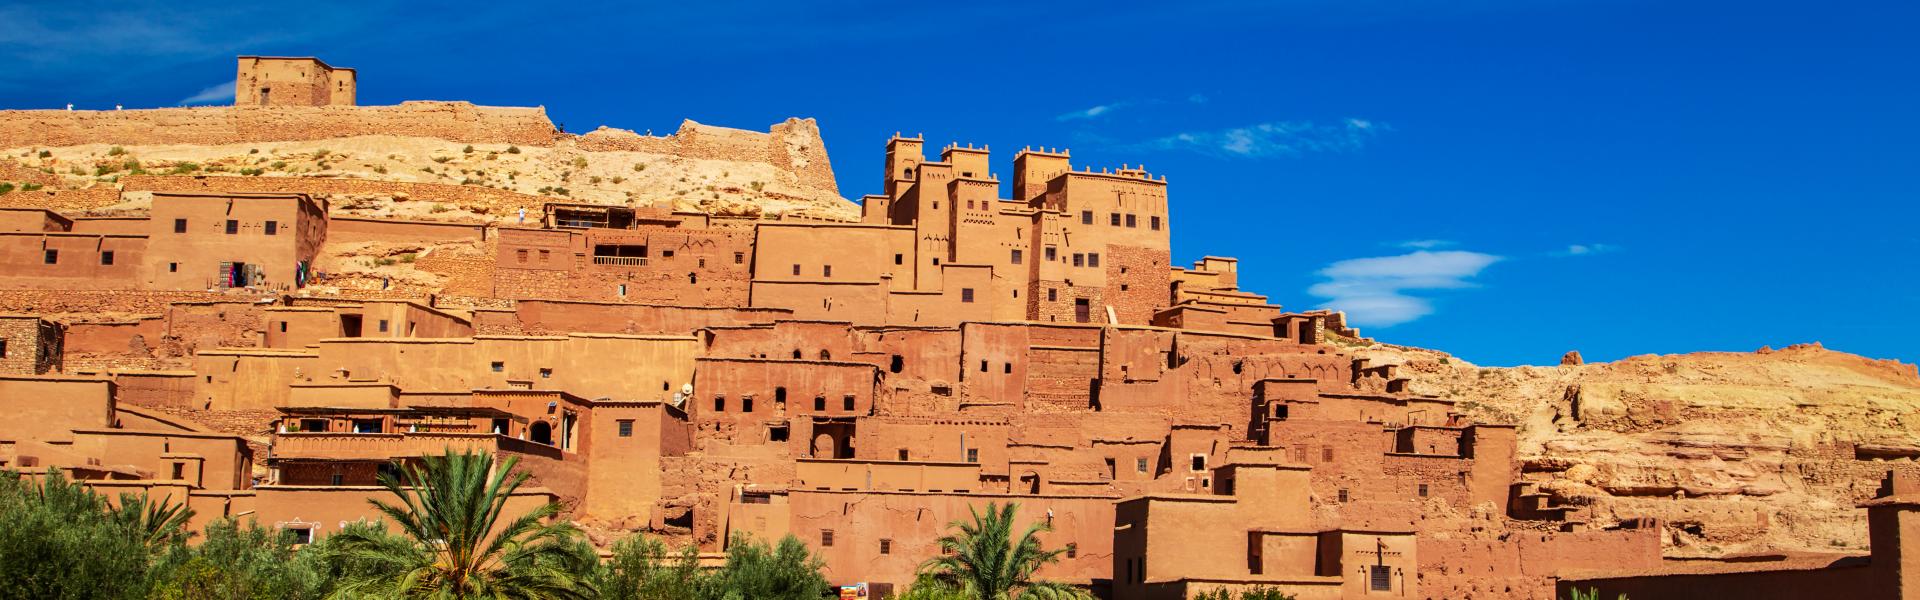 Znajdź najlepsze noclegi i apartamenty w Maroku - Casamundo